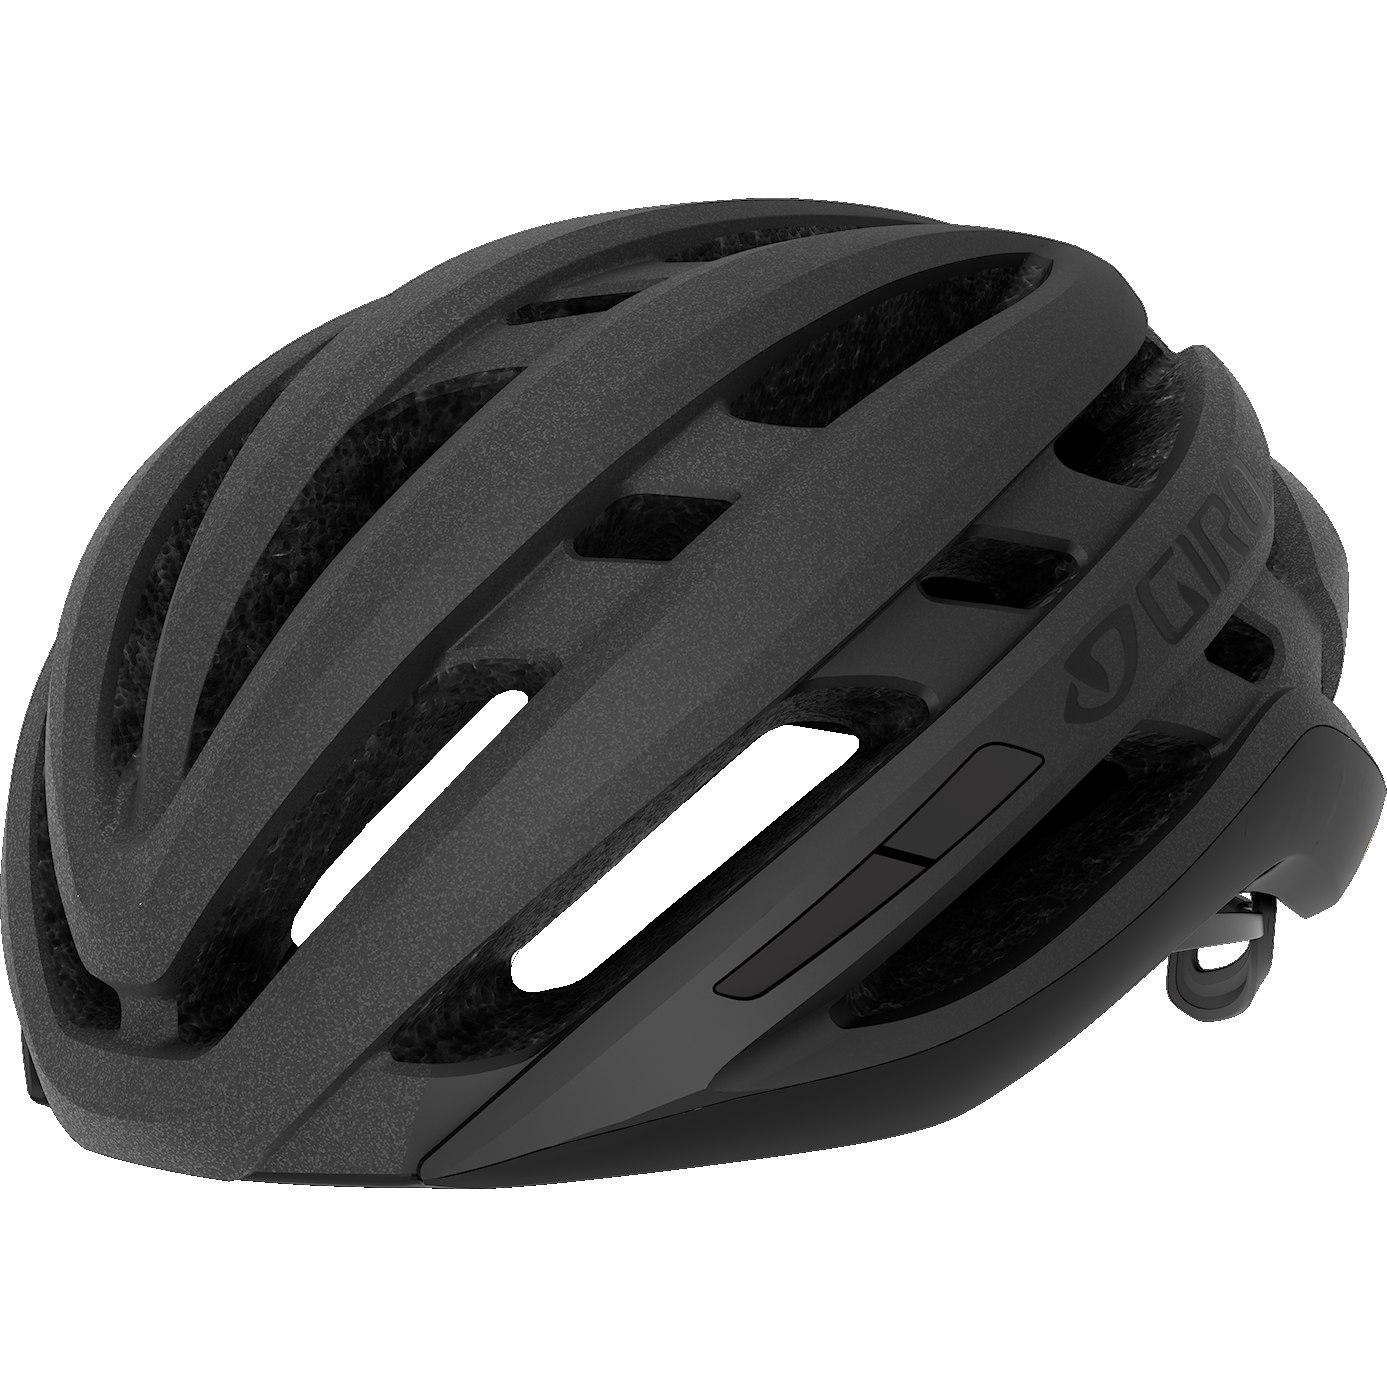 Produktbild von Giro Agilis Helm - matte black